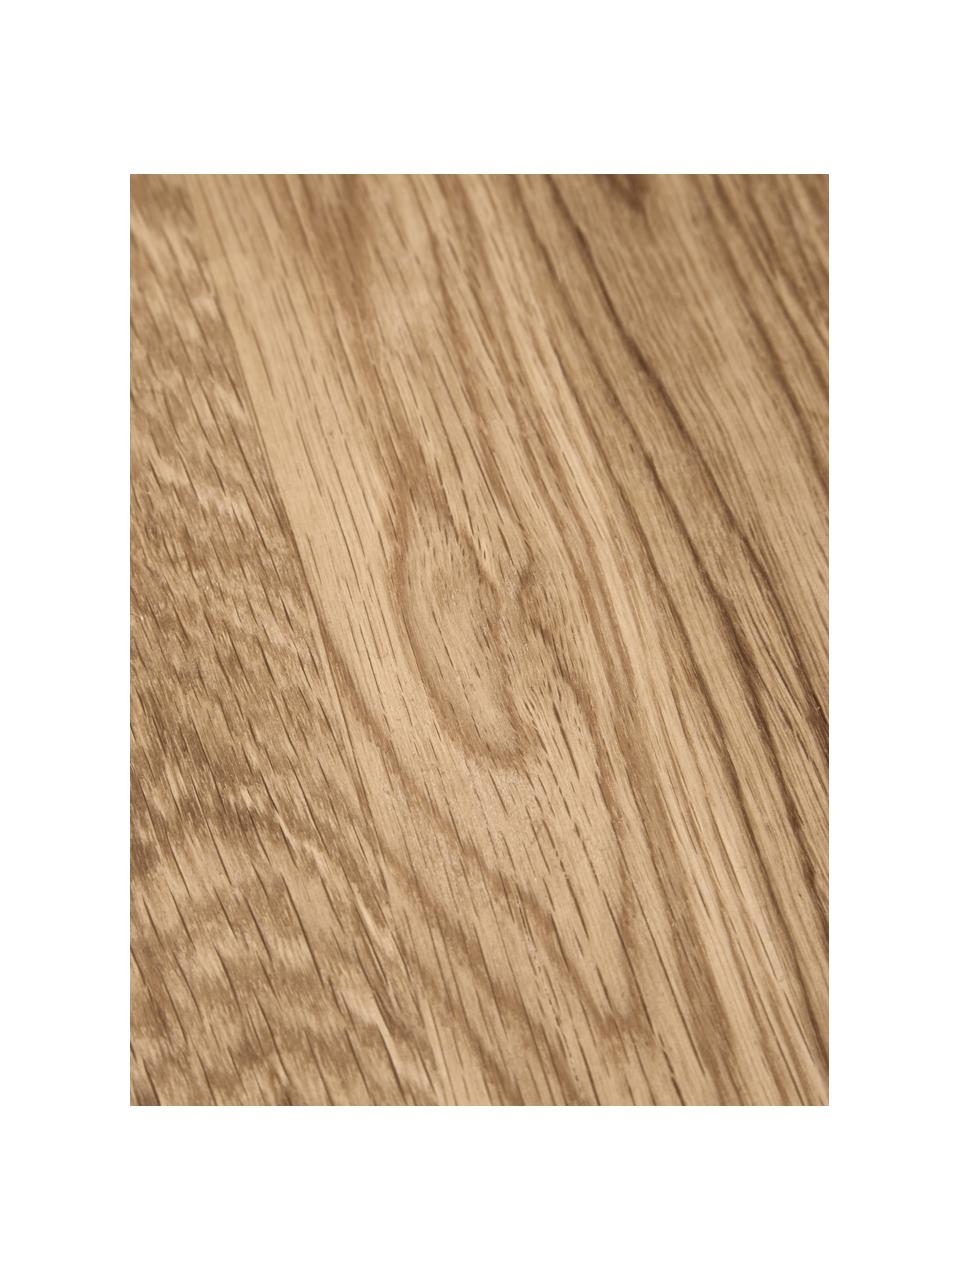 Beistelltisch Didi aus Eichenholz, Massives Eichenholz, geölt

Dieses Produkt wird aus nachhaltig gewonnenem, FSC®-zertifiziertem Holz gefertigt., Eichenholz, Ø 40 x H 45 cm